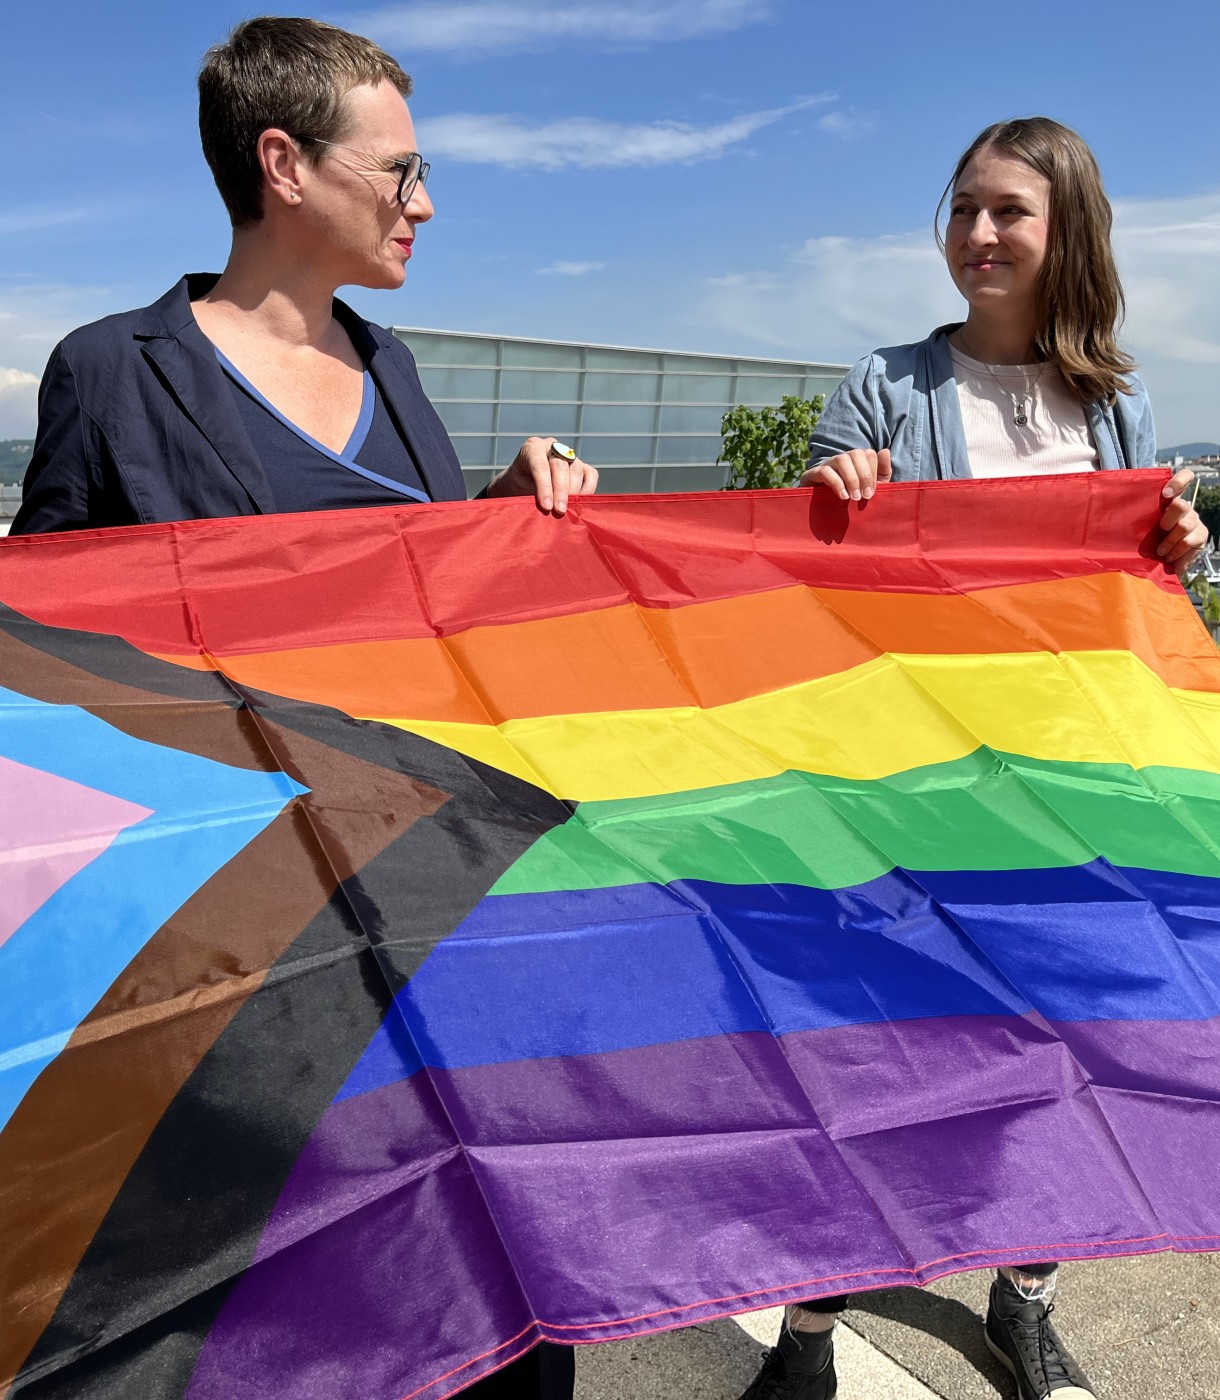 IDAHOBIT: Mehr Sichtbarkeit der  LGBTIQ*-Community im öffentlichen Raum  ist wichtiges Signal für Respekt und Akzeptanz 